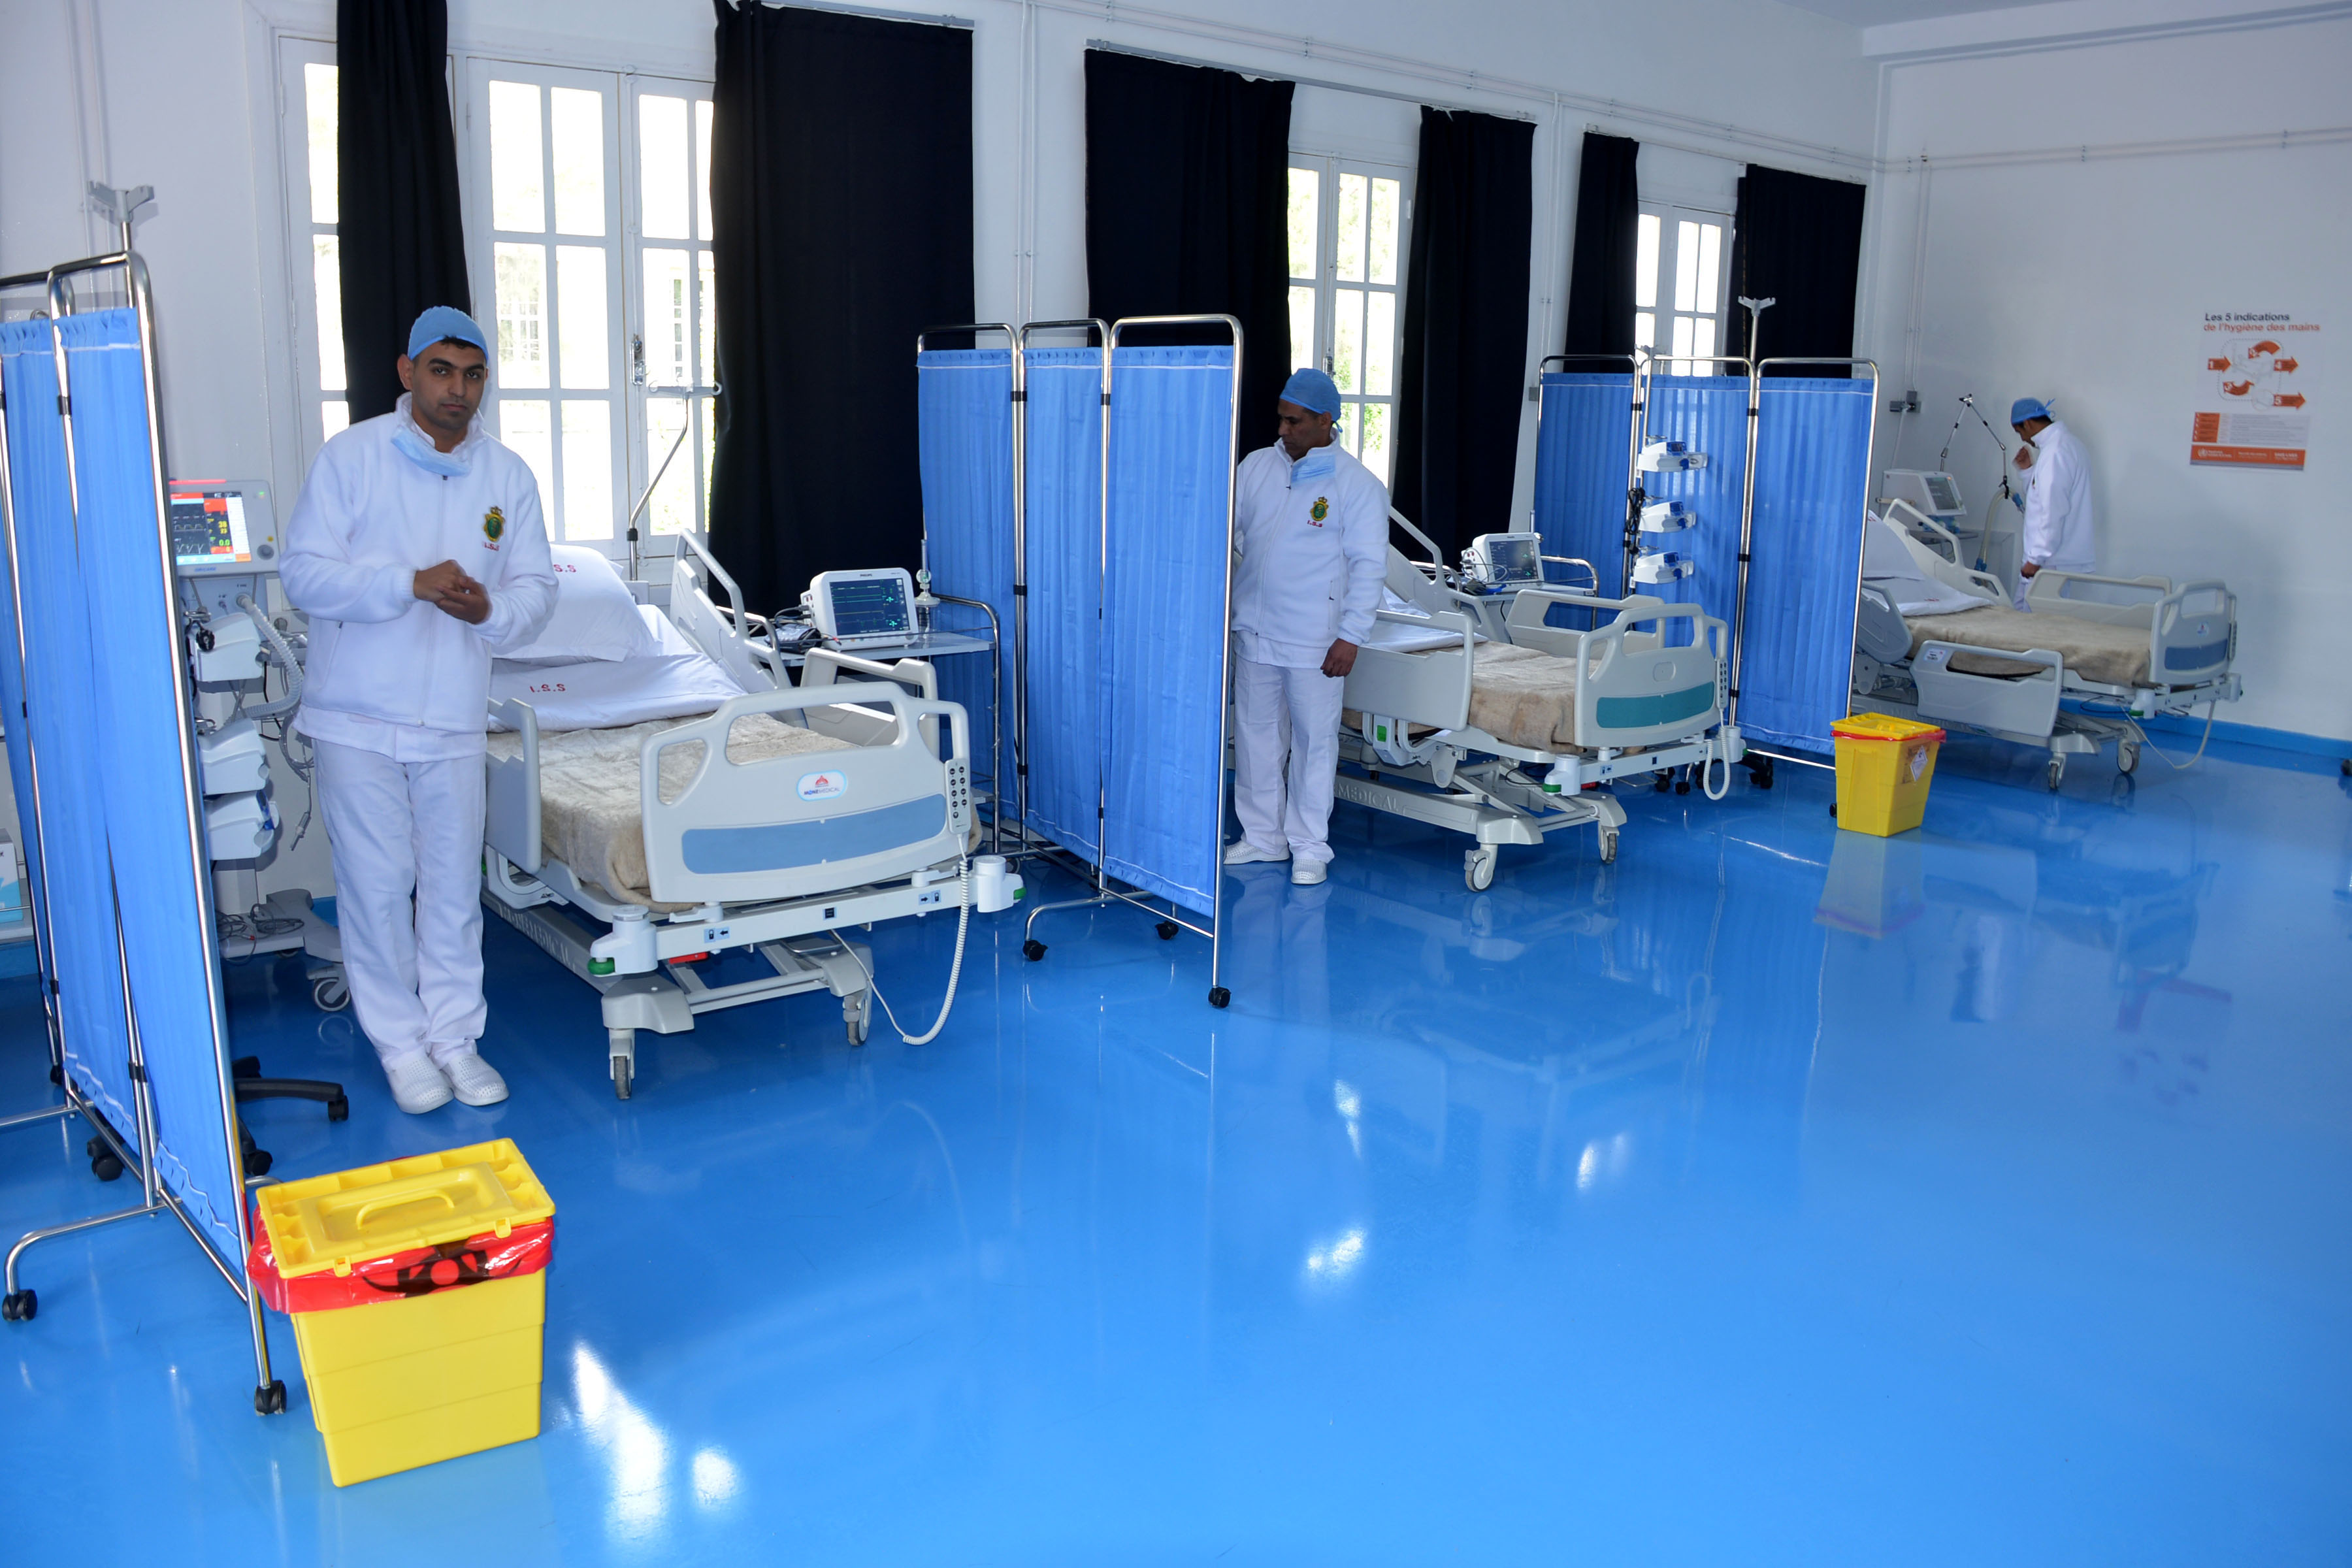 Réforme de la Santé : Déception des infirmiers et des techniciens de santé face à "l'approche unilatérale" du ministère